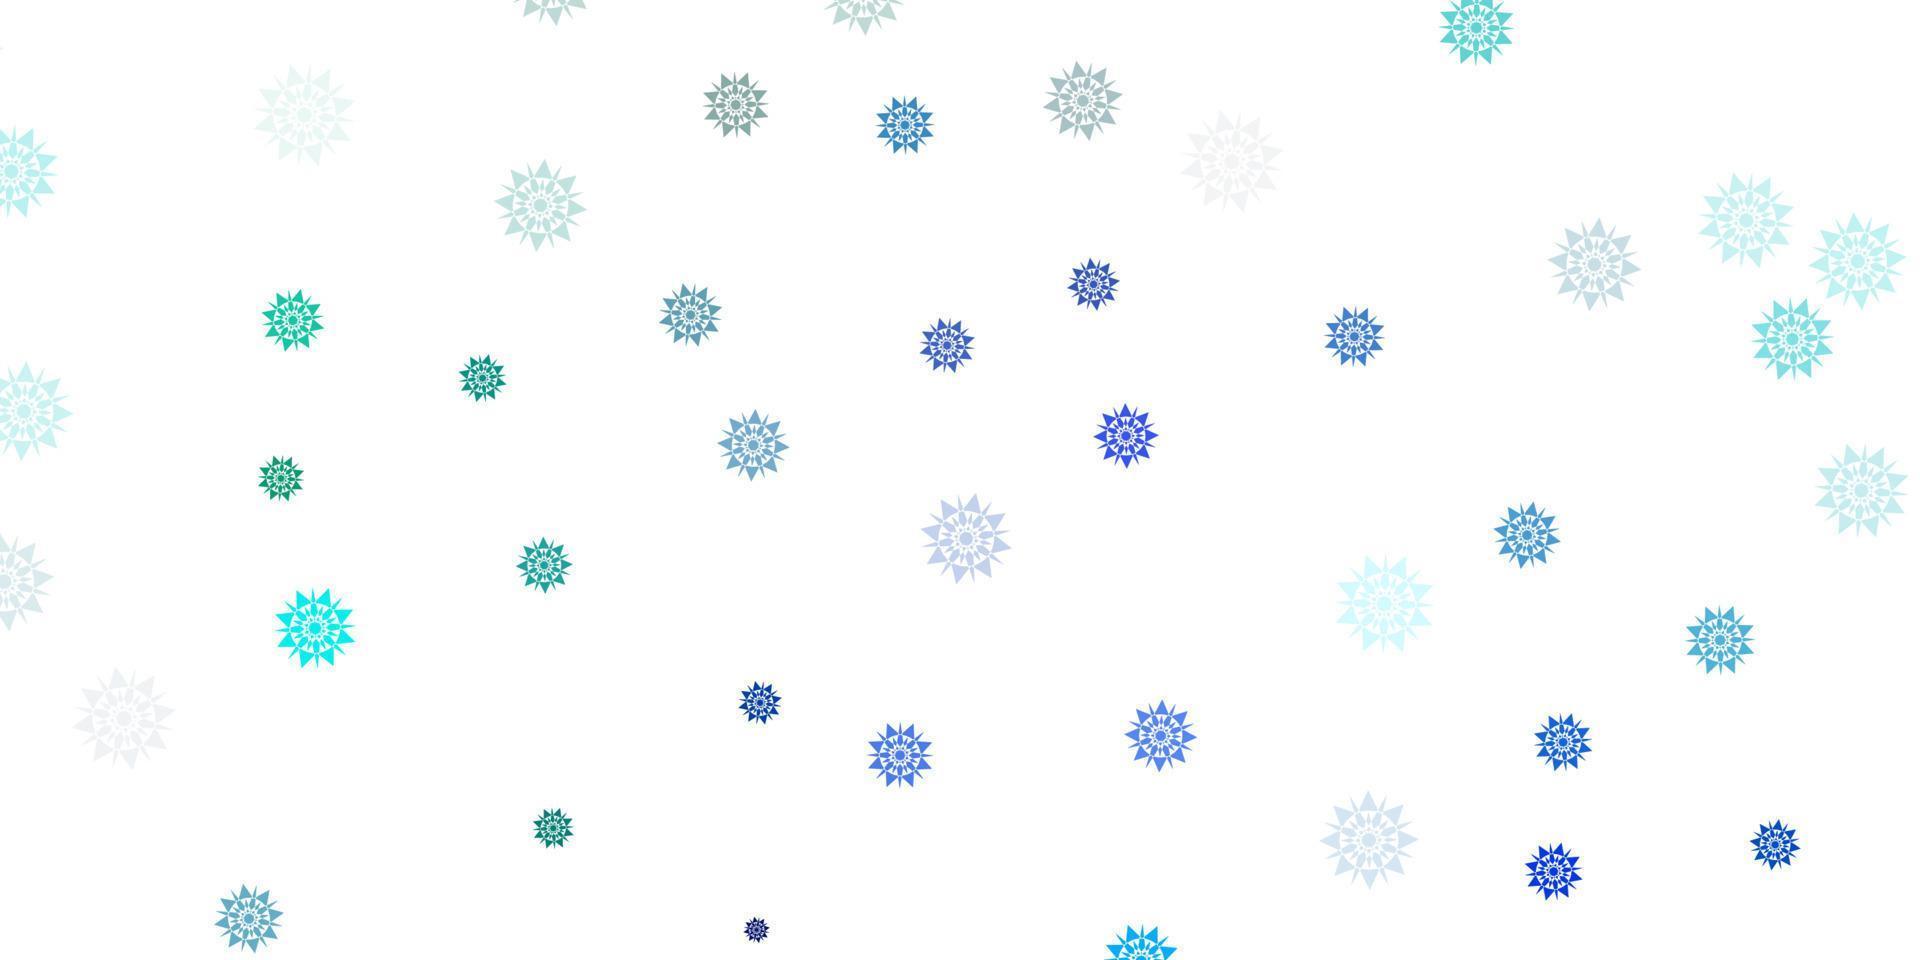 ljusblå vektorlayout med vackra snöflingor. vektor